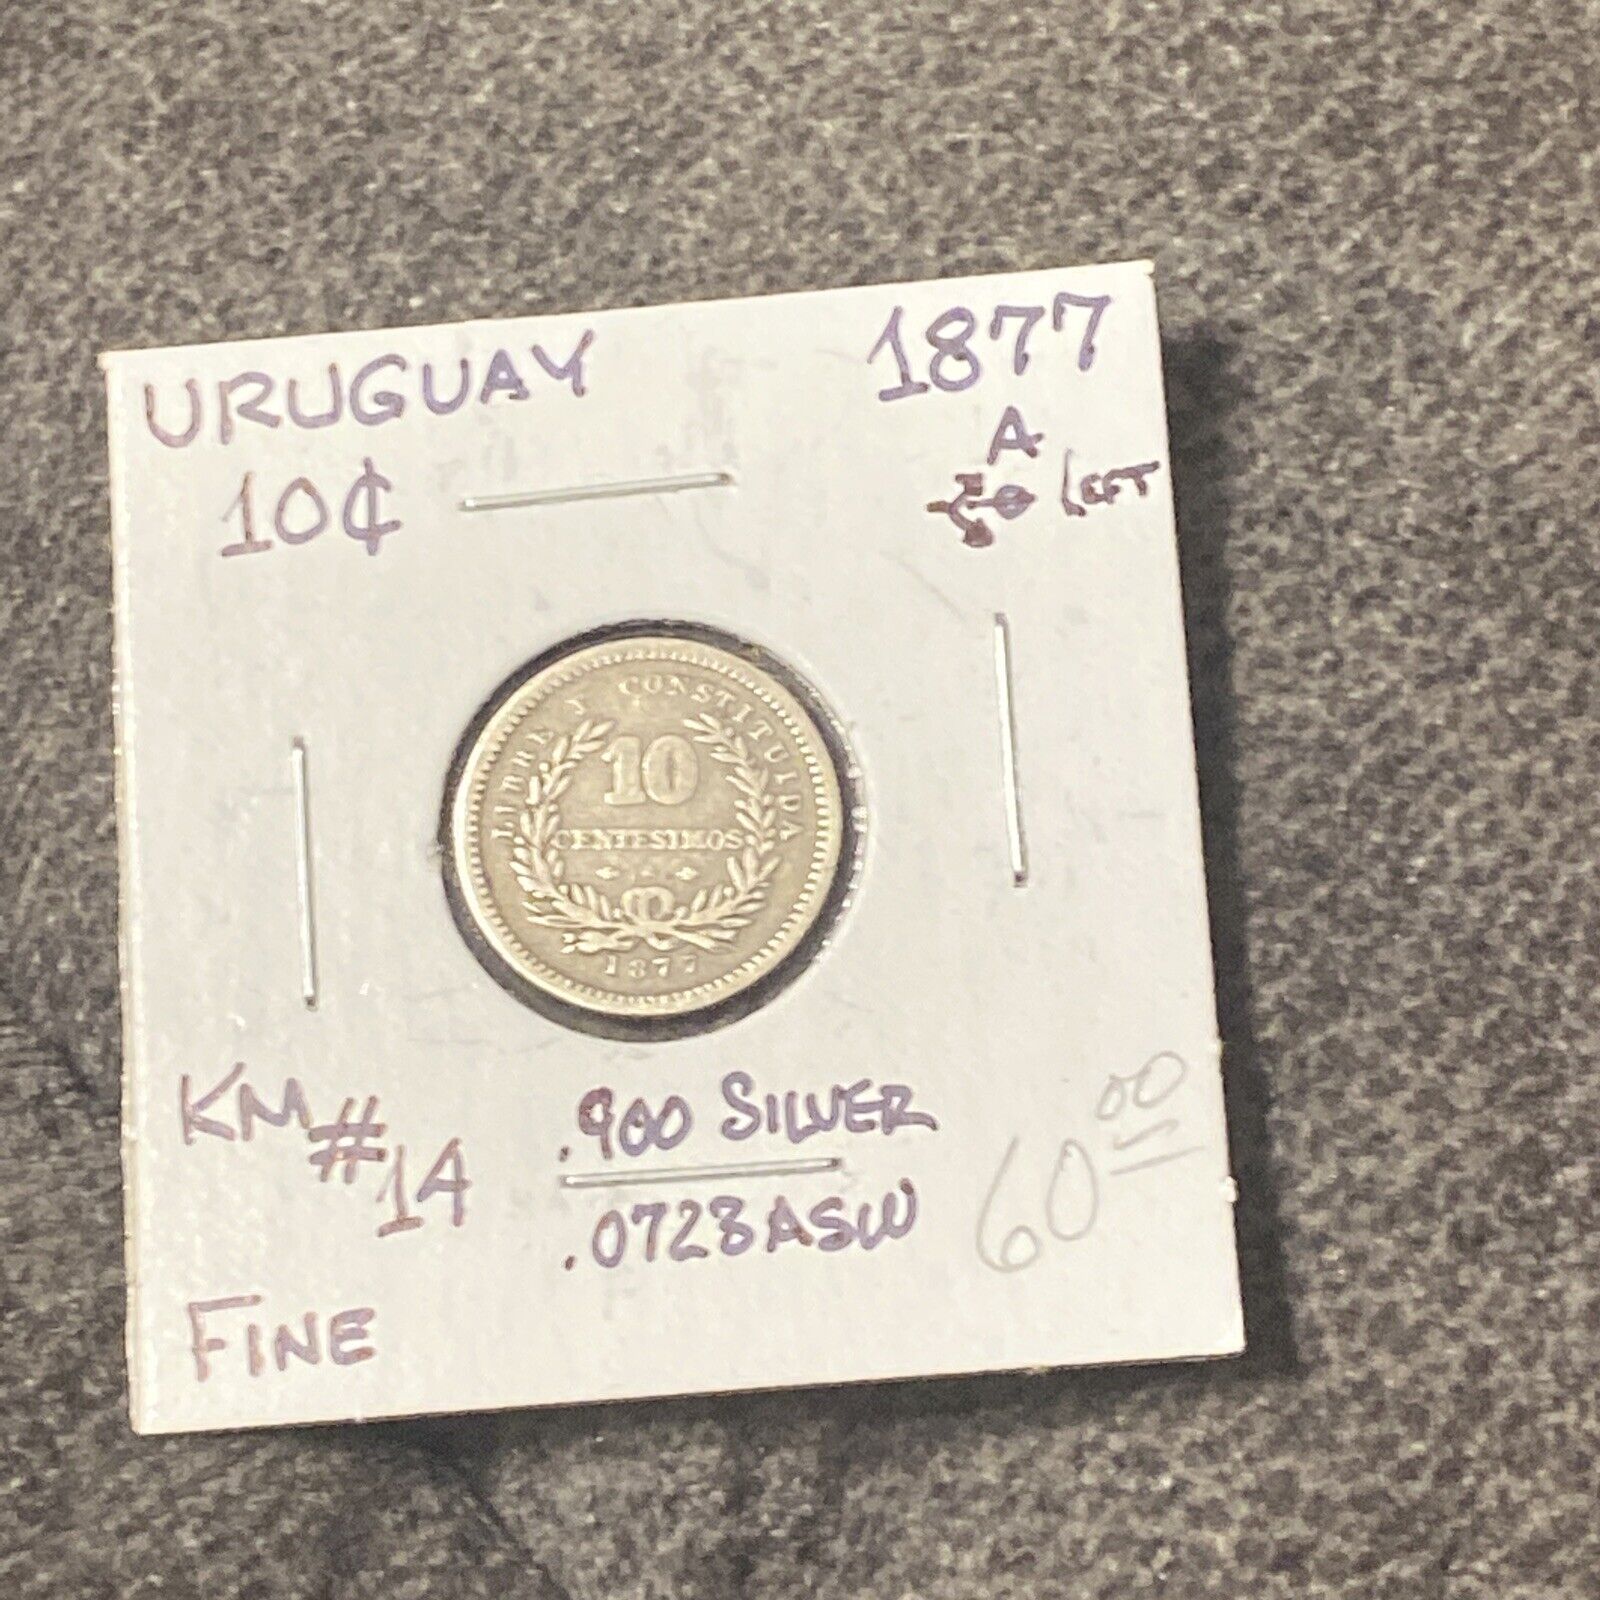 Uruguay - Silver 10 Centesimos - 1877a - Km-14 - Circulated